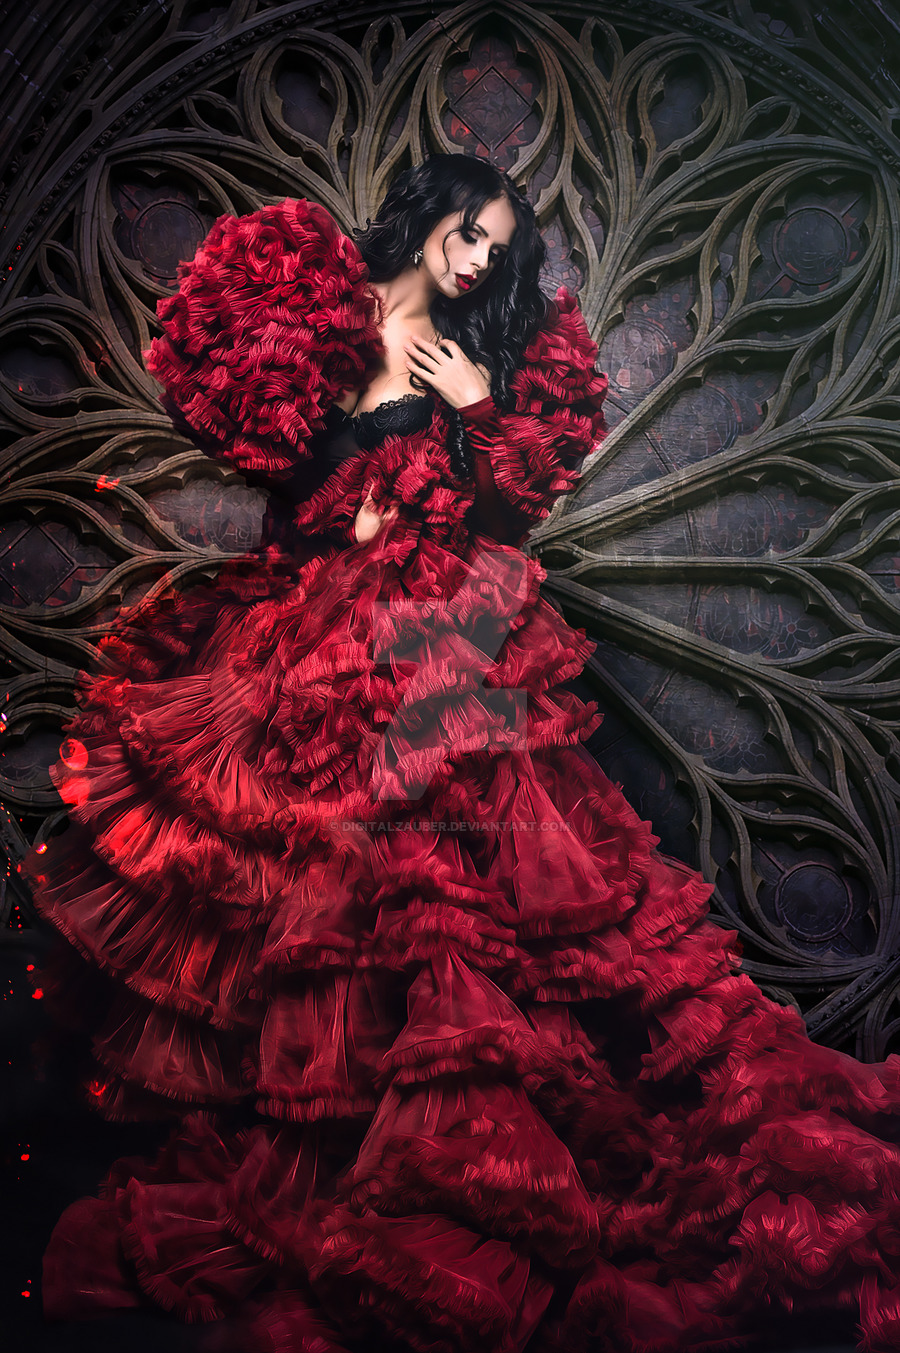 Фото Девушка в длинном темно-красном платье, by Digitalzauber